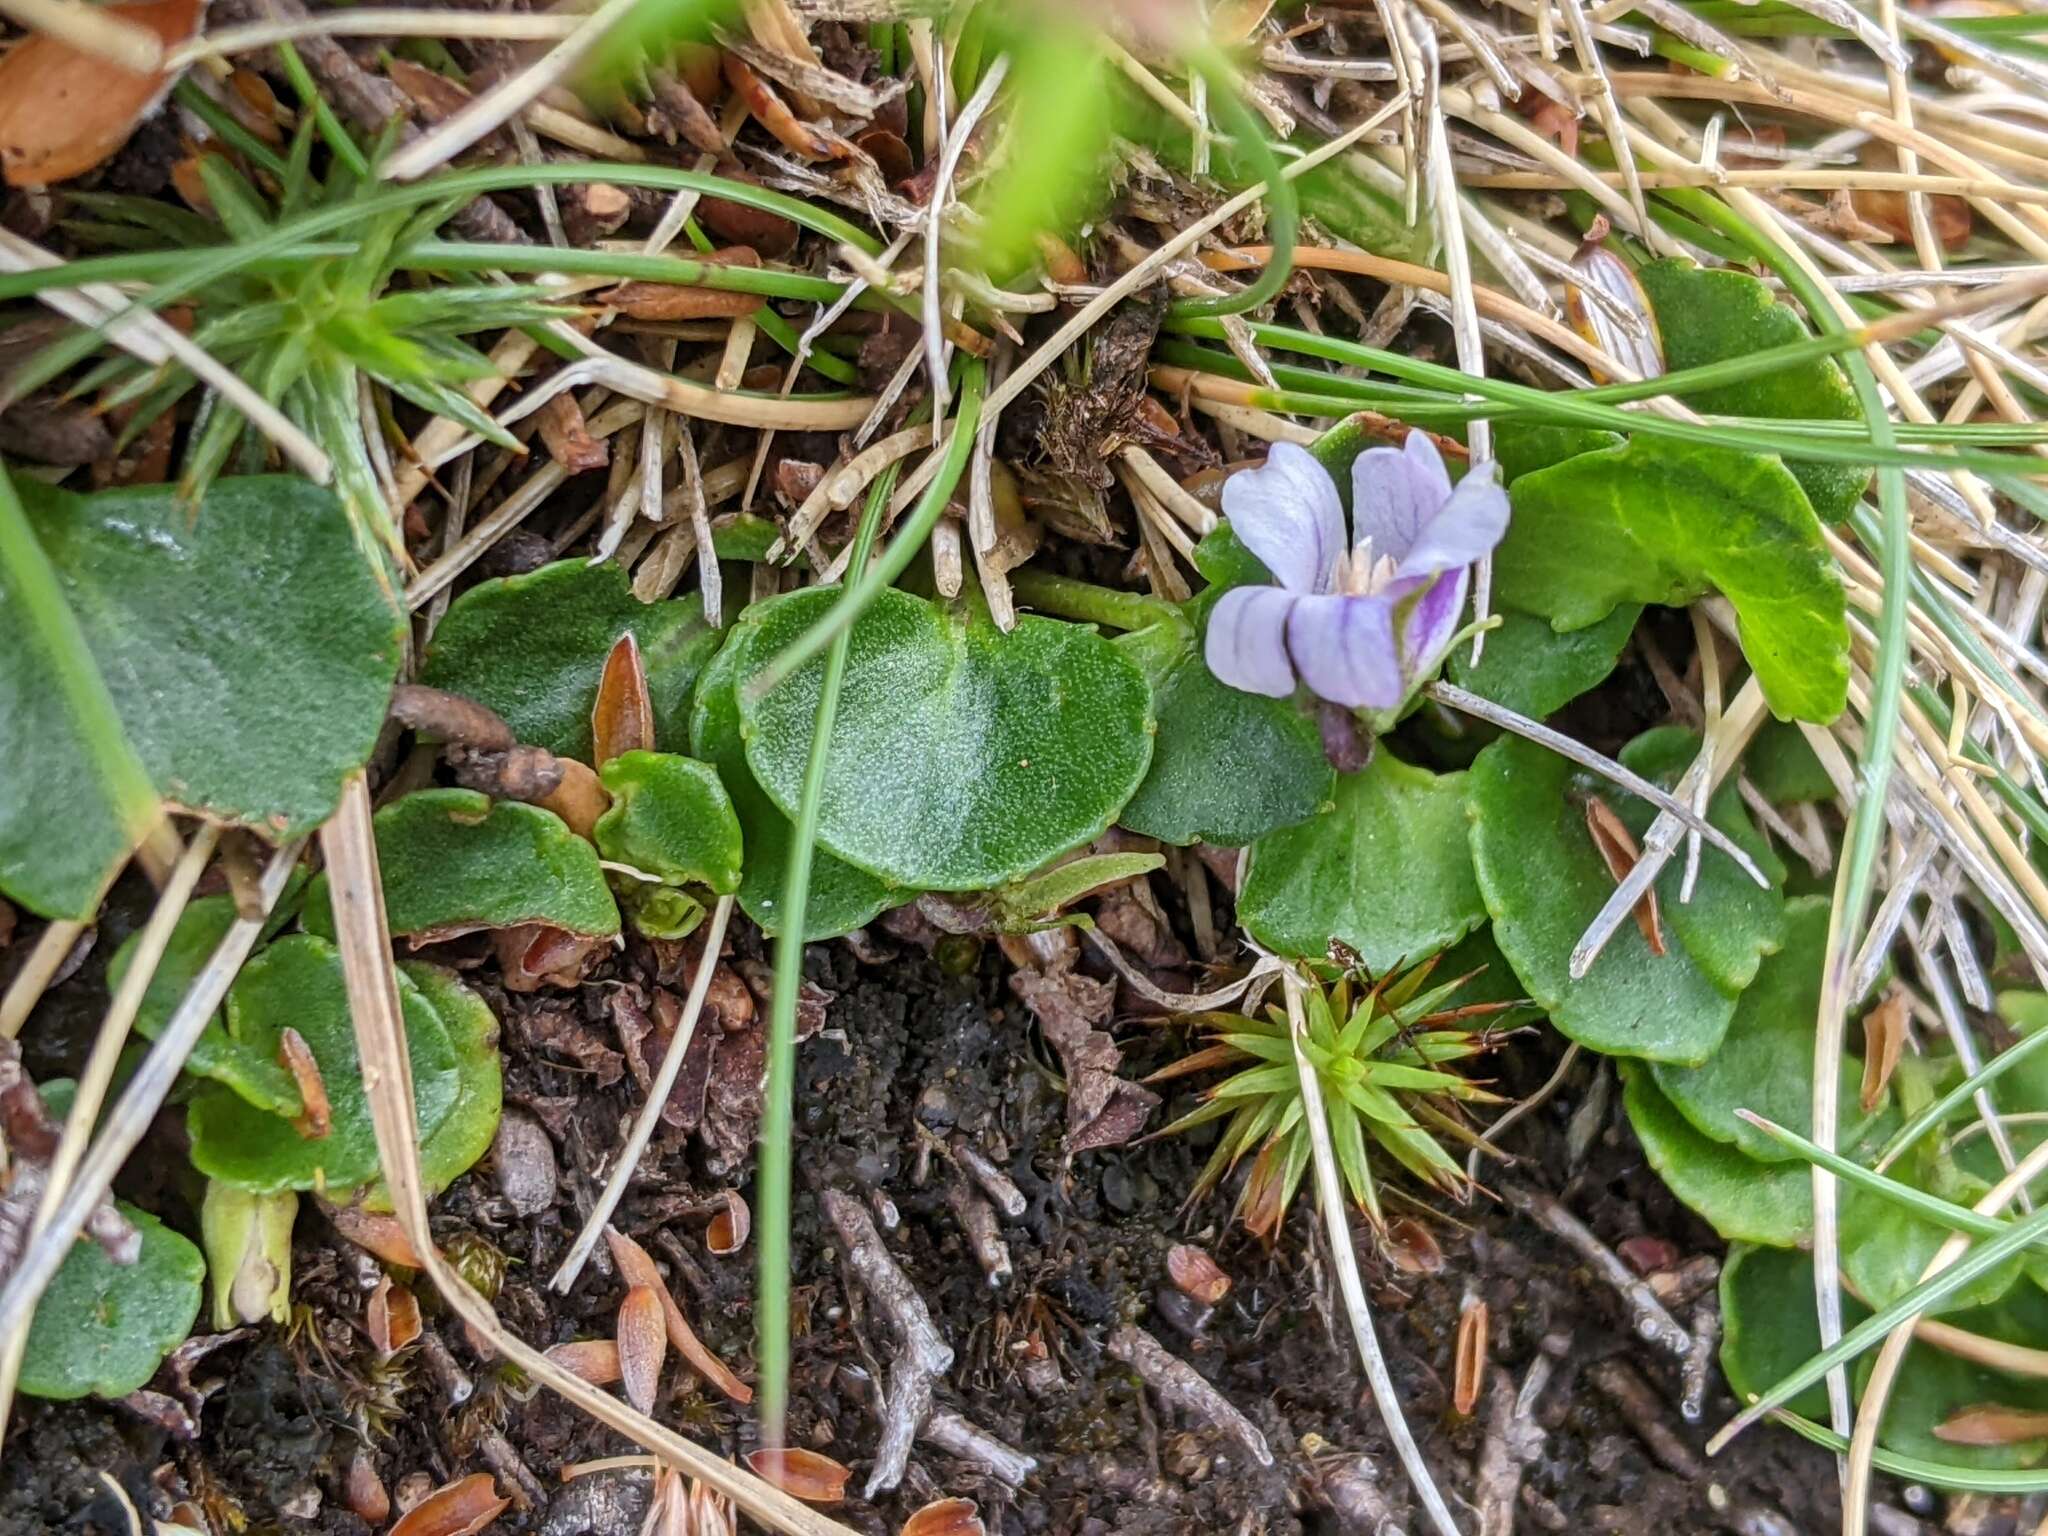 Image of Viola curtisiae